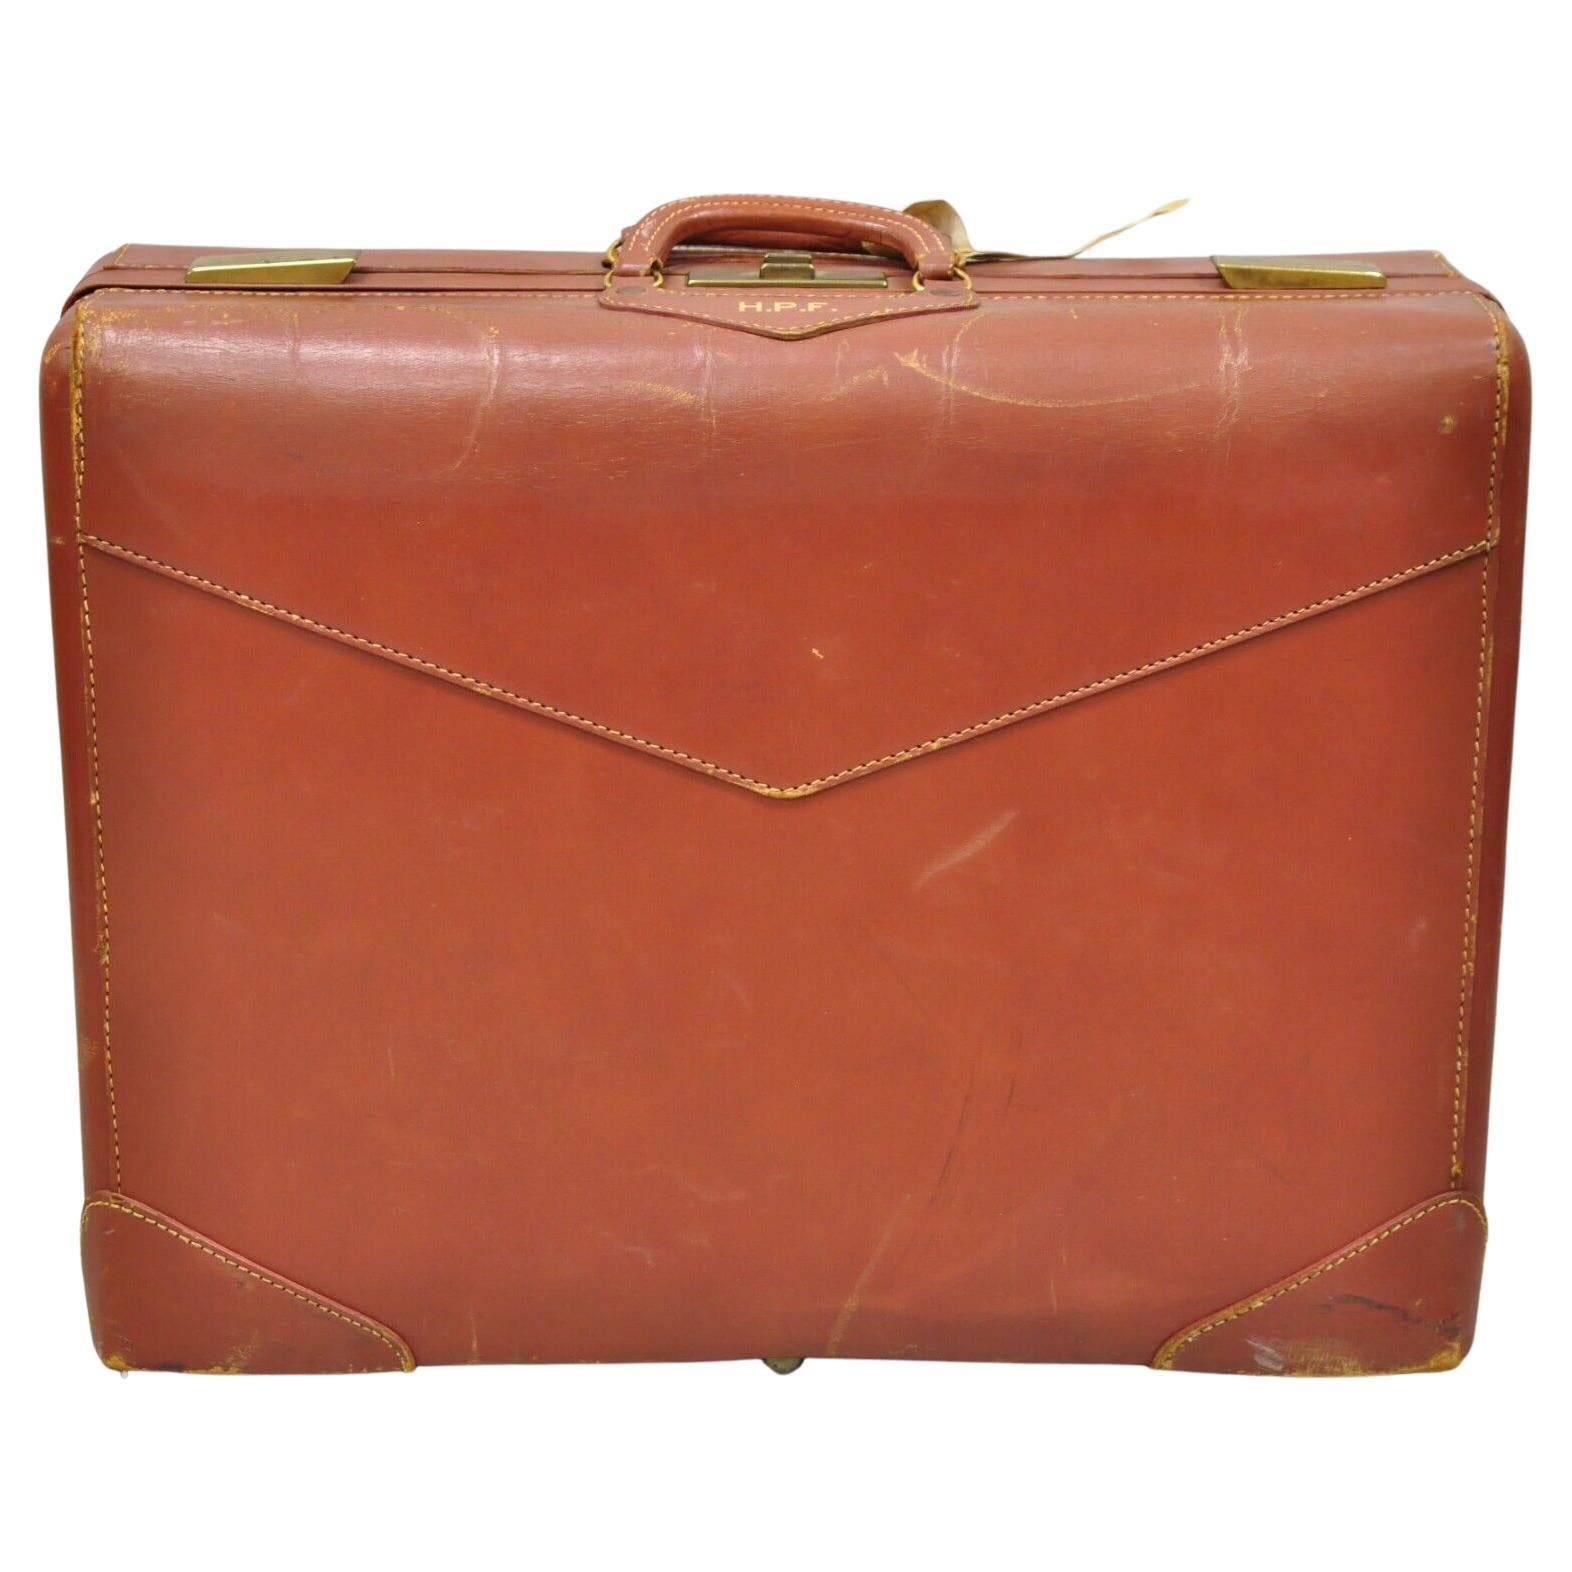 Vintage Genuine Top Grade Cowhide Brown Leather Suitcase Luggage